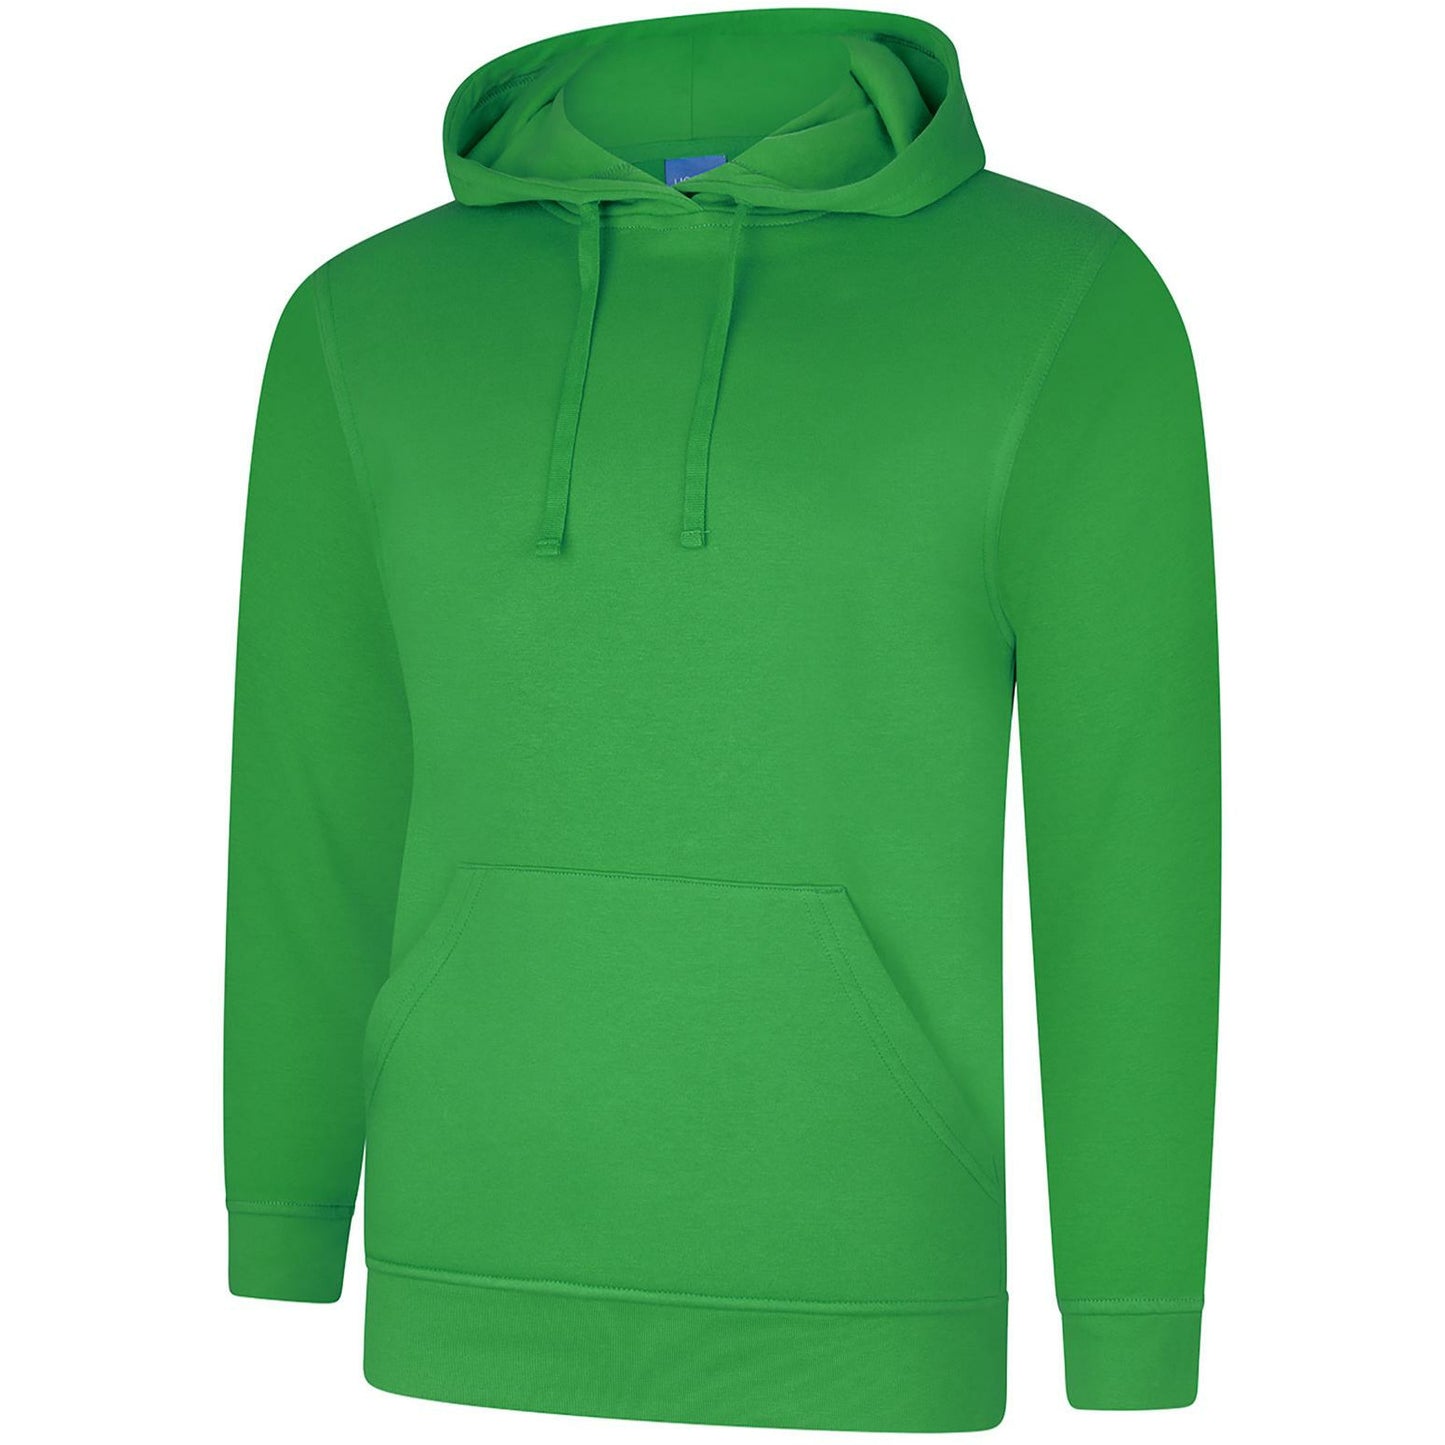 Deluxe Hooded Sweatshirt (XS - M) Amazon Green